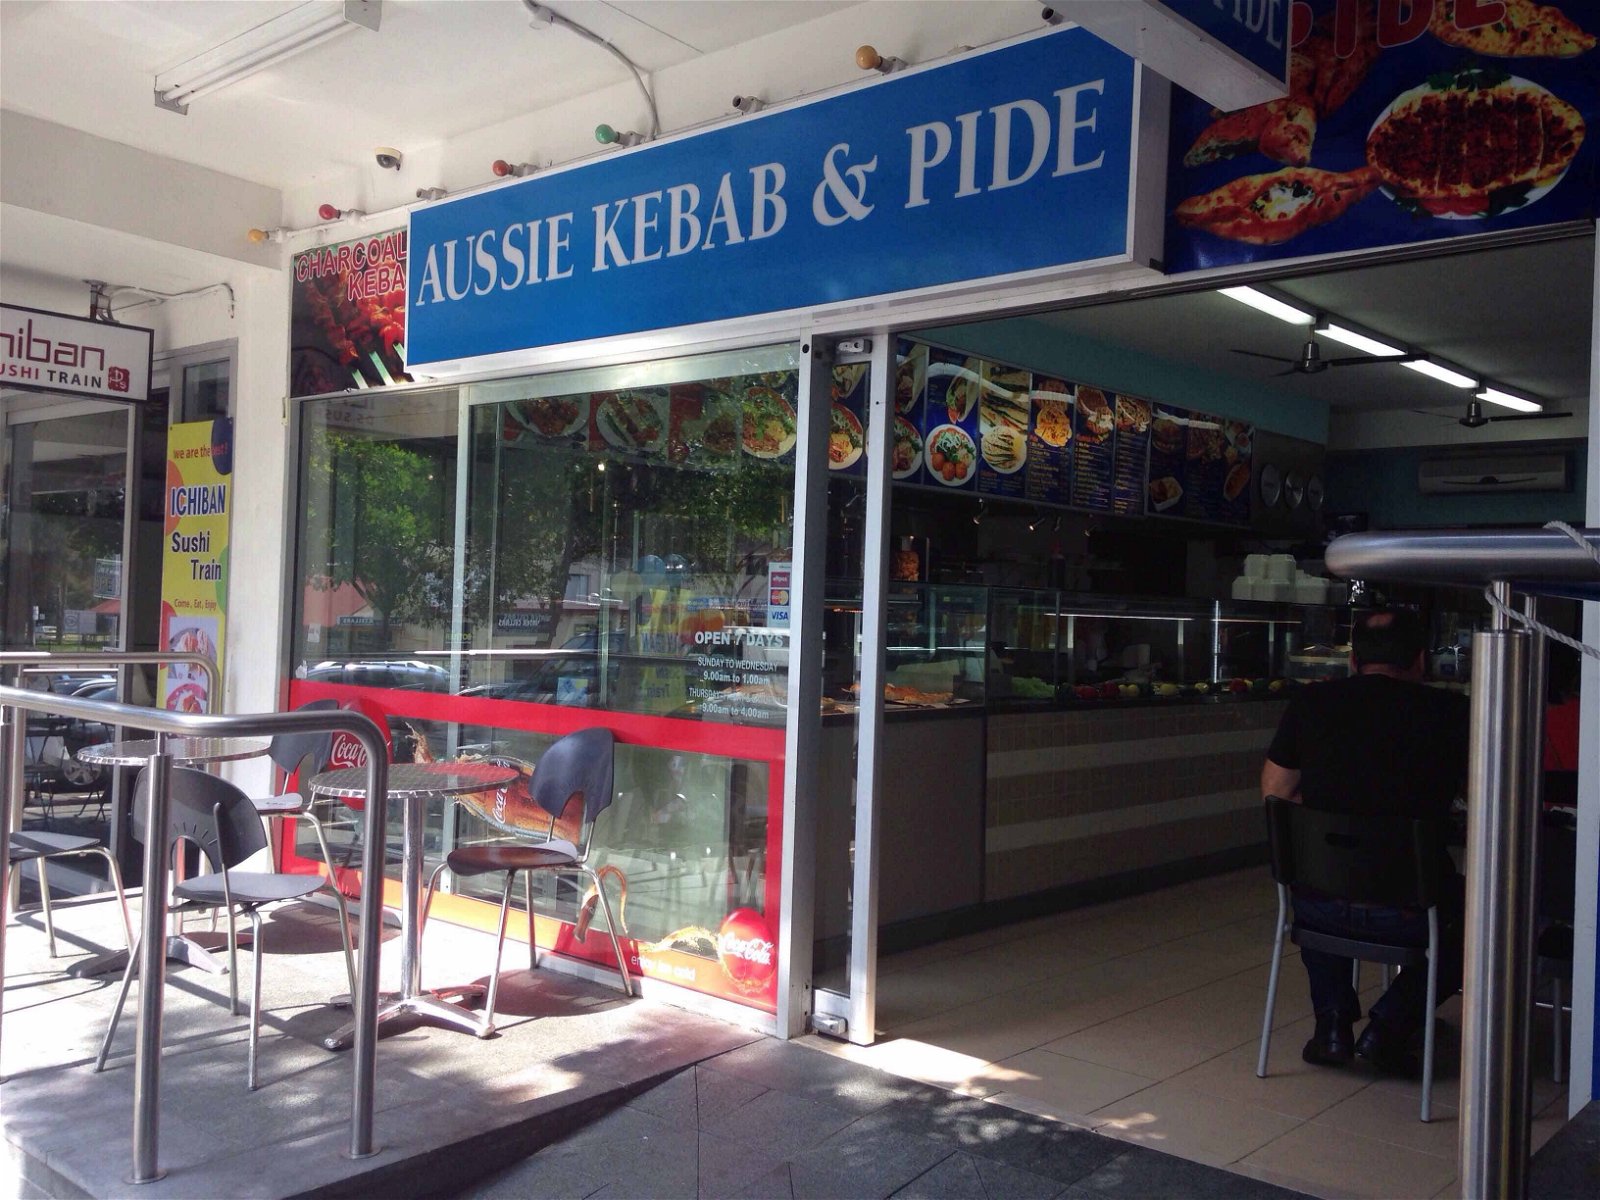 Aussie Kebab  Pide - Pubs Sydney